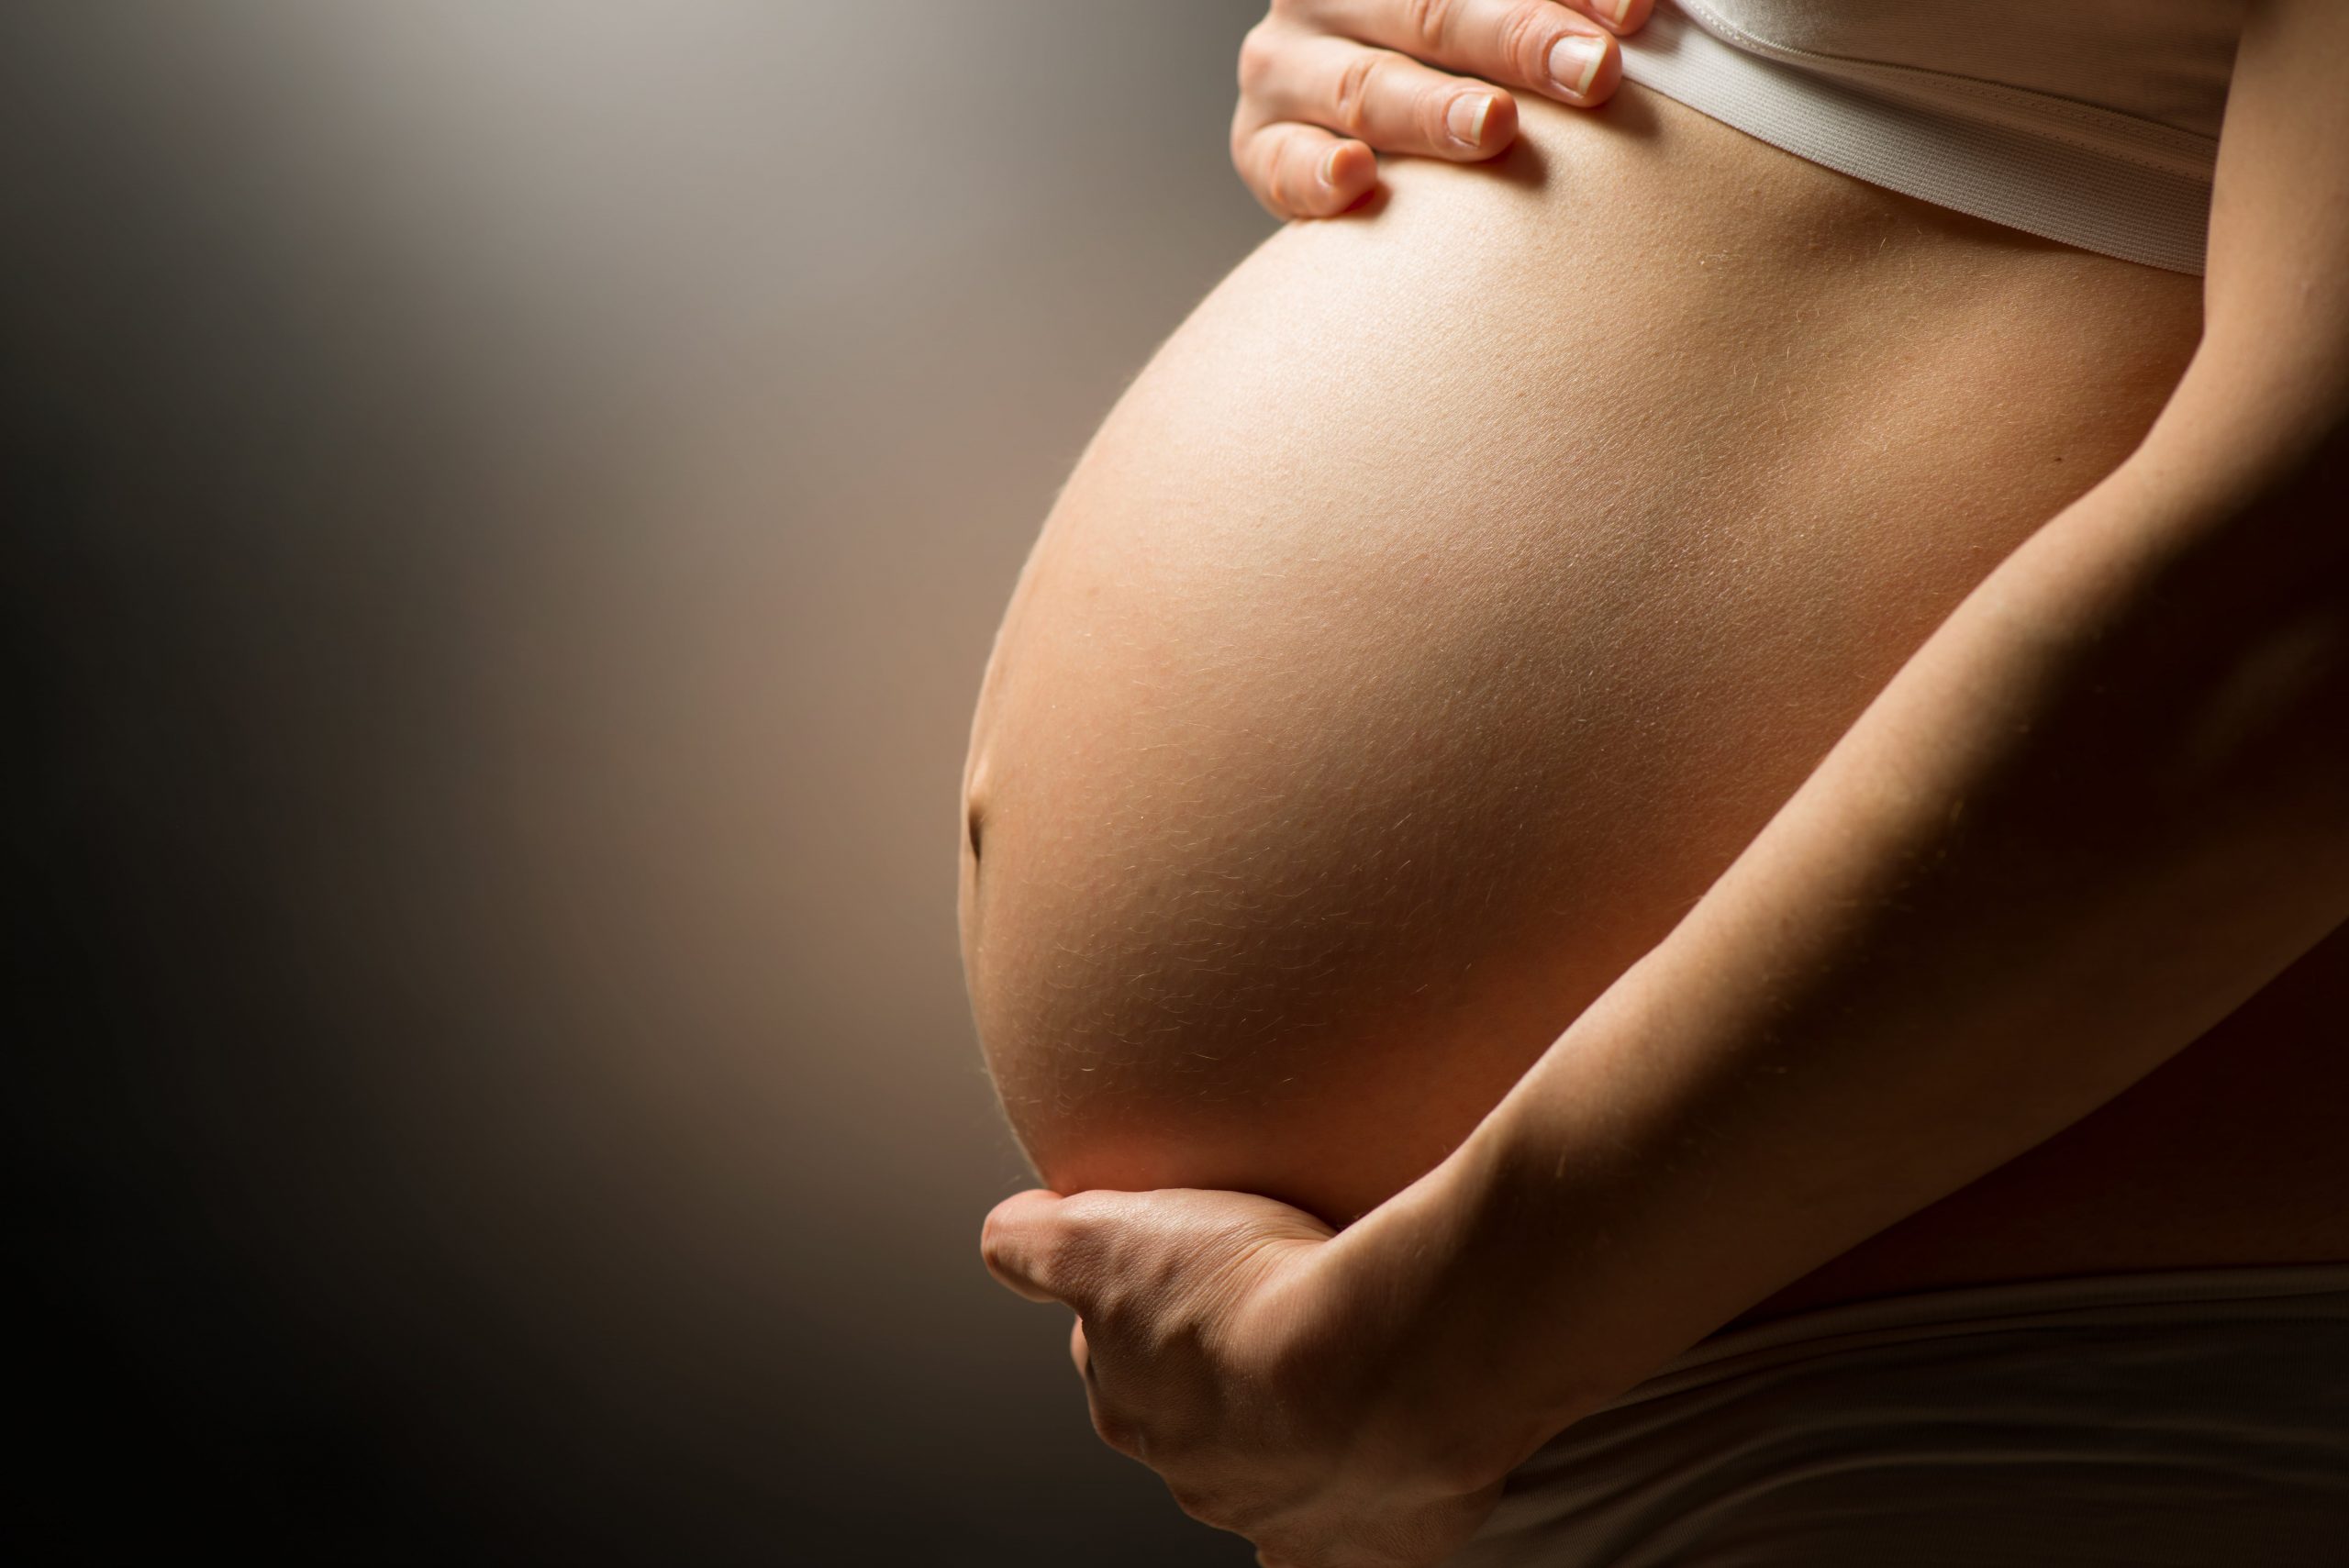 Embarazo antes de los 20 y después de los 35 años conlleva riesgos durante gestación y parto: INPer